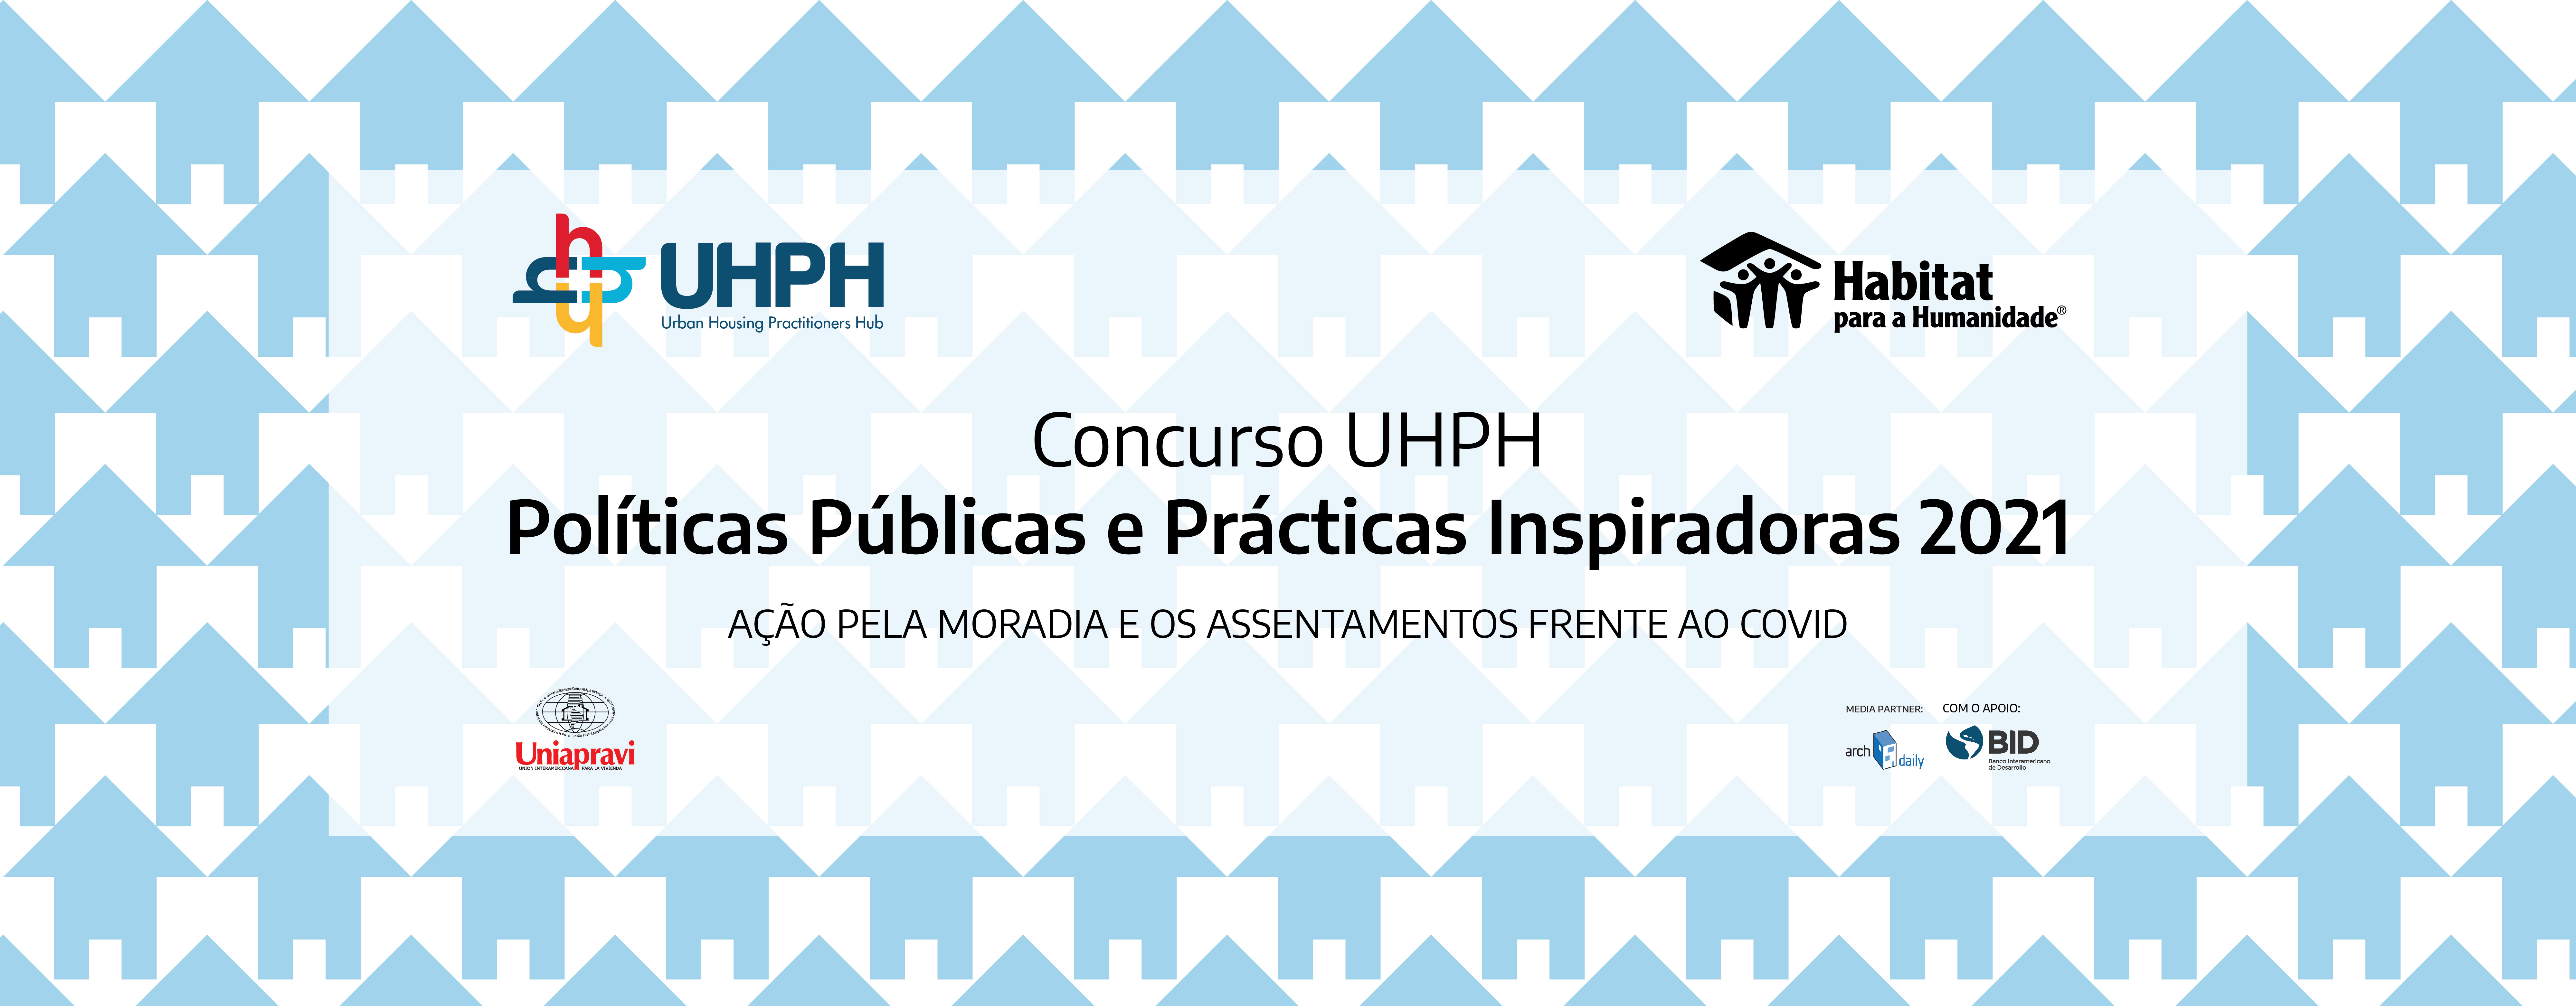 UHPH 2021 Contest: Aplicação em português